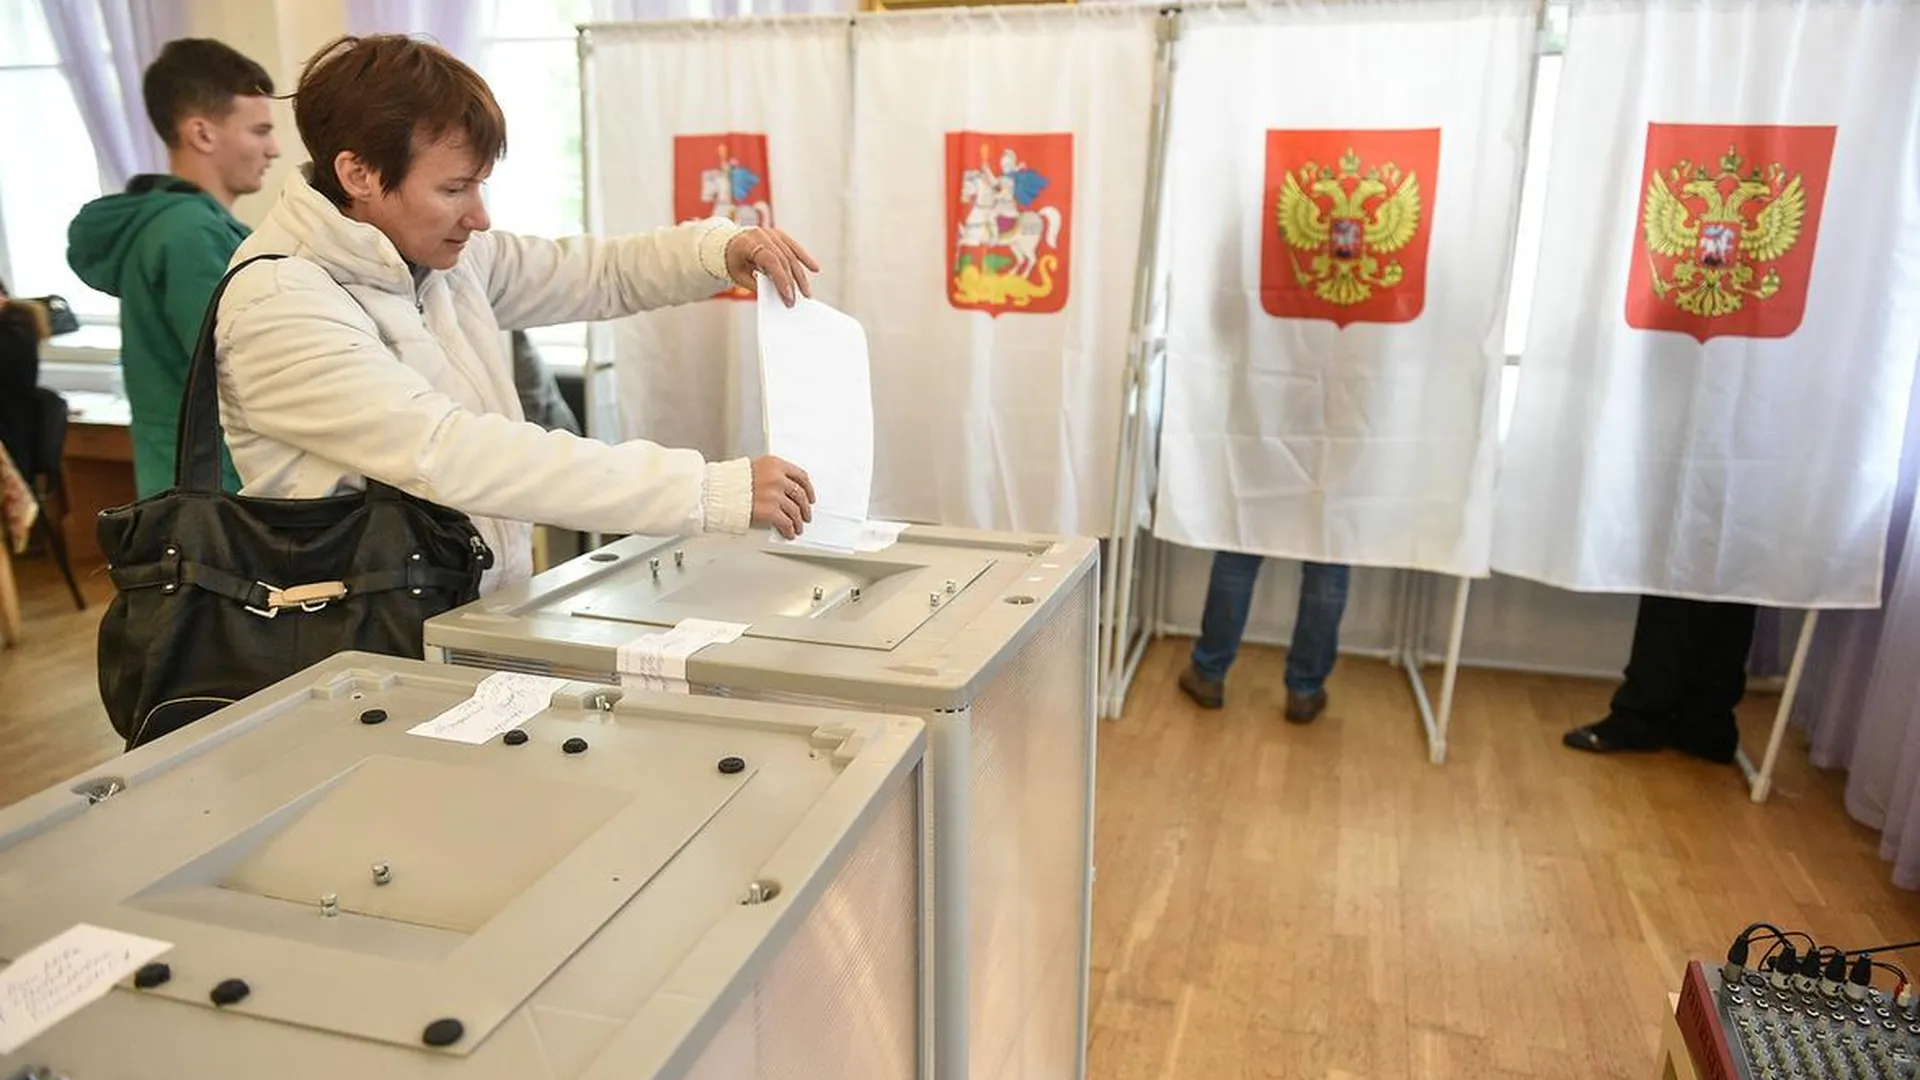 Депутат Коган положительно оценил старт голосования в Подмосковье